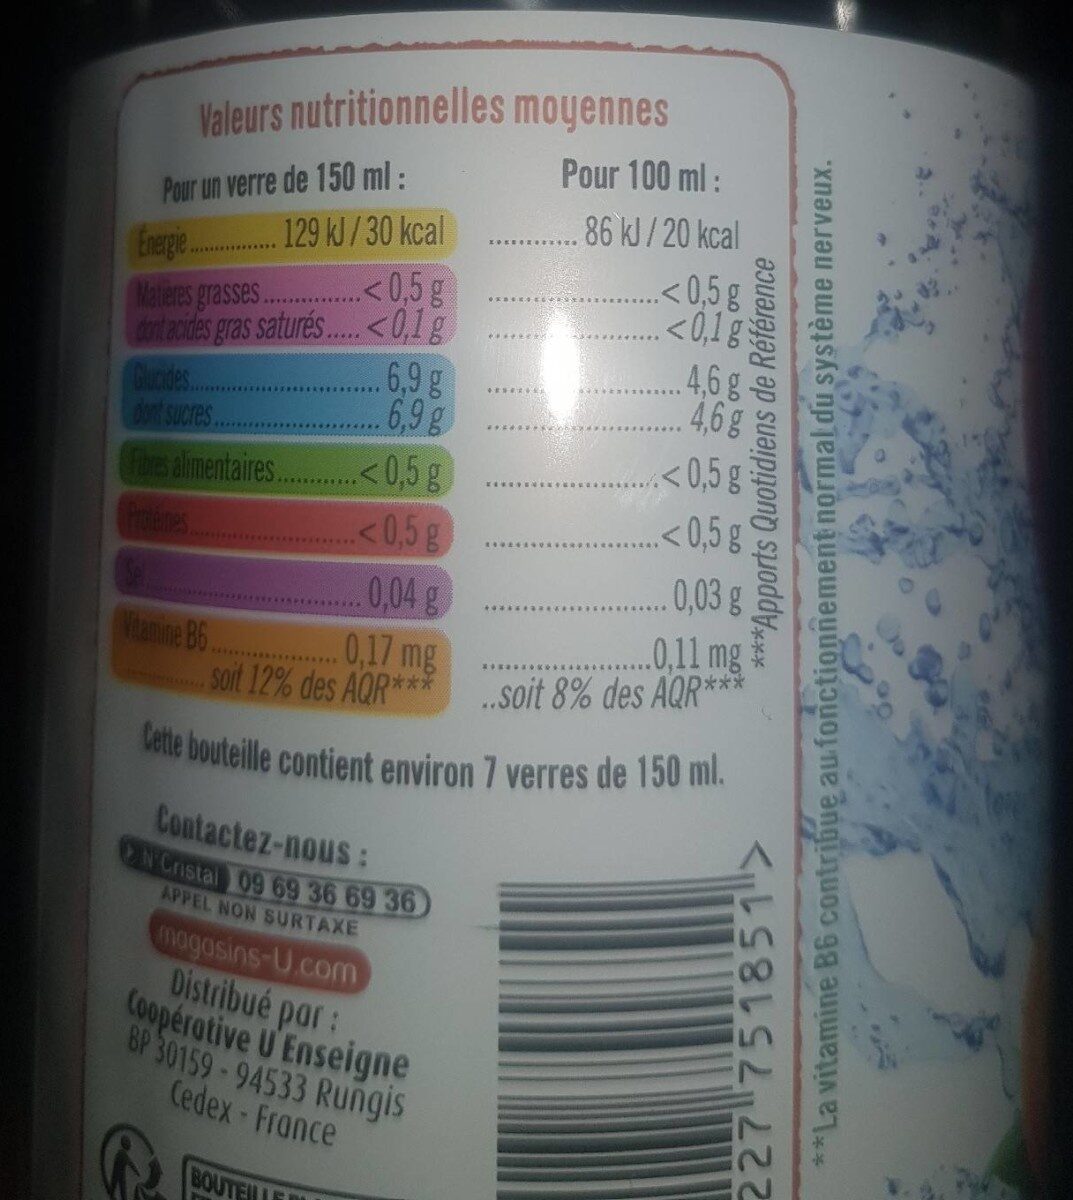 Eau aromatisée pomme abricot verveine - Nutrition facts - fr